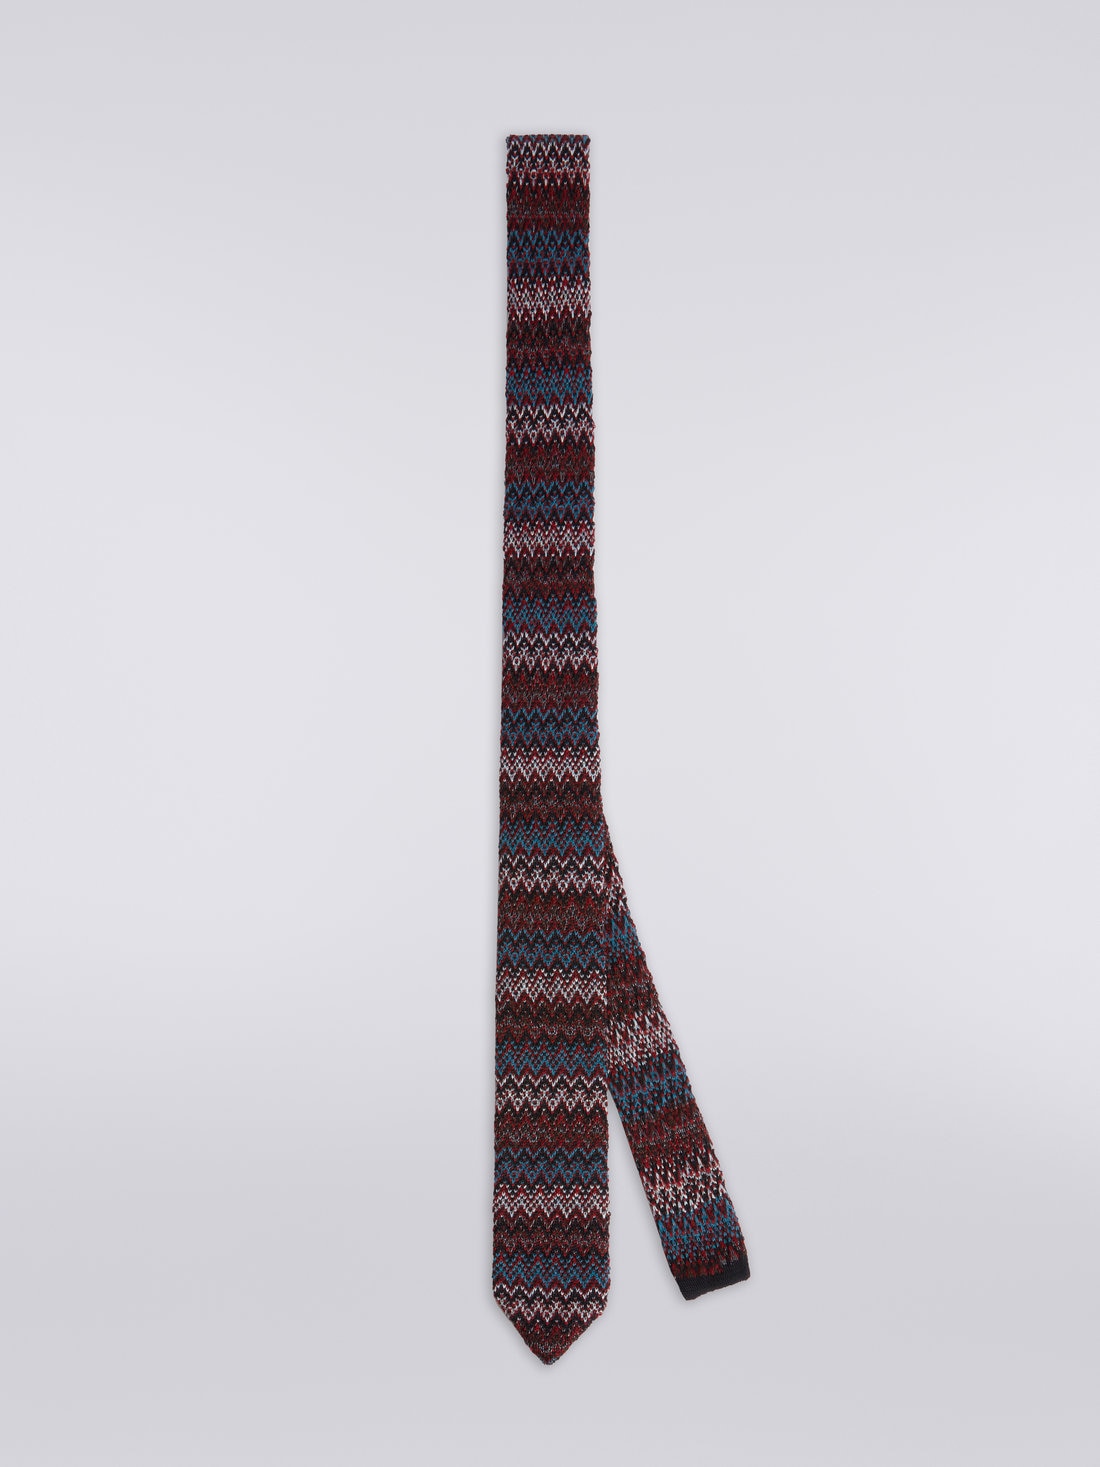 Krawatte aus Wolle und Seide mit Chevronmuster, Mehrfarbig  - 8053147023441 - 0